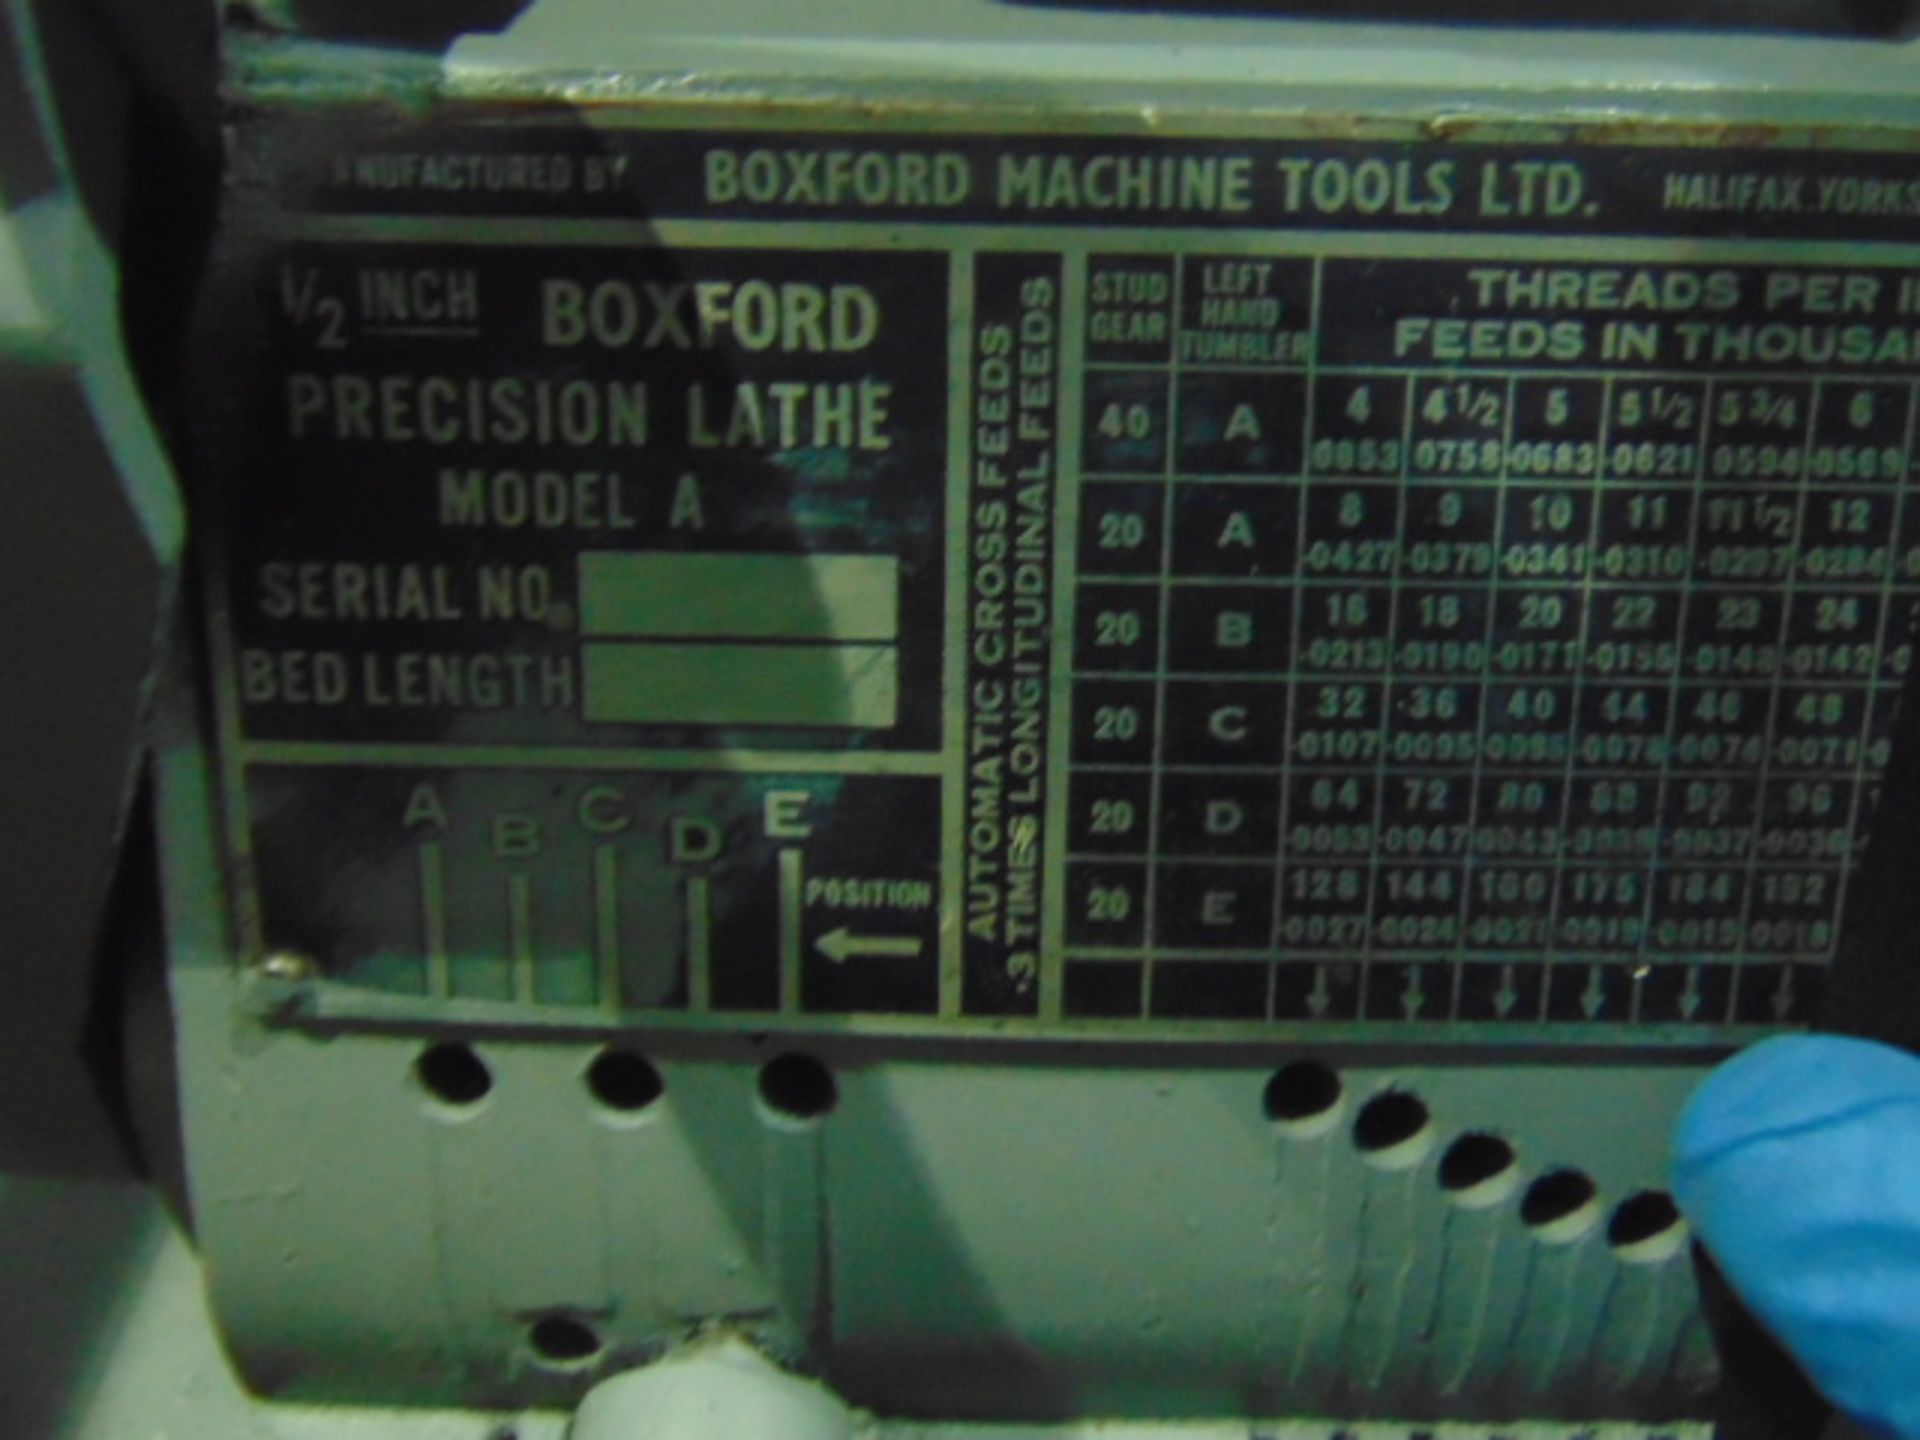 Boxford Precision Lathe Model A - Bild 5 aus 9